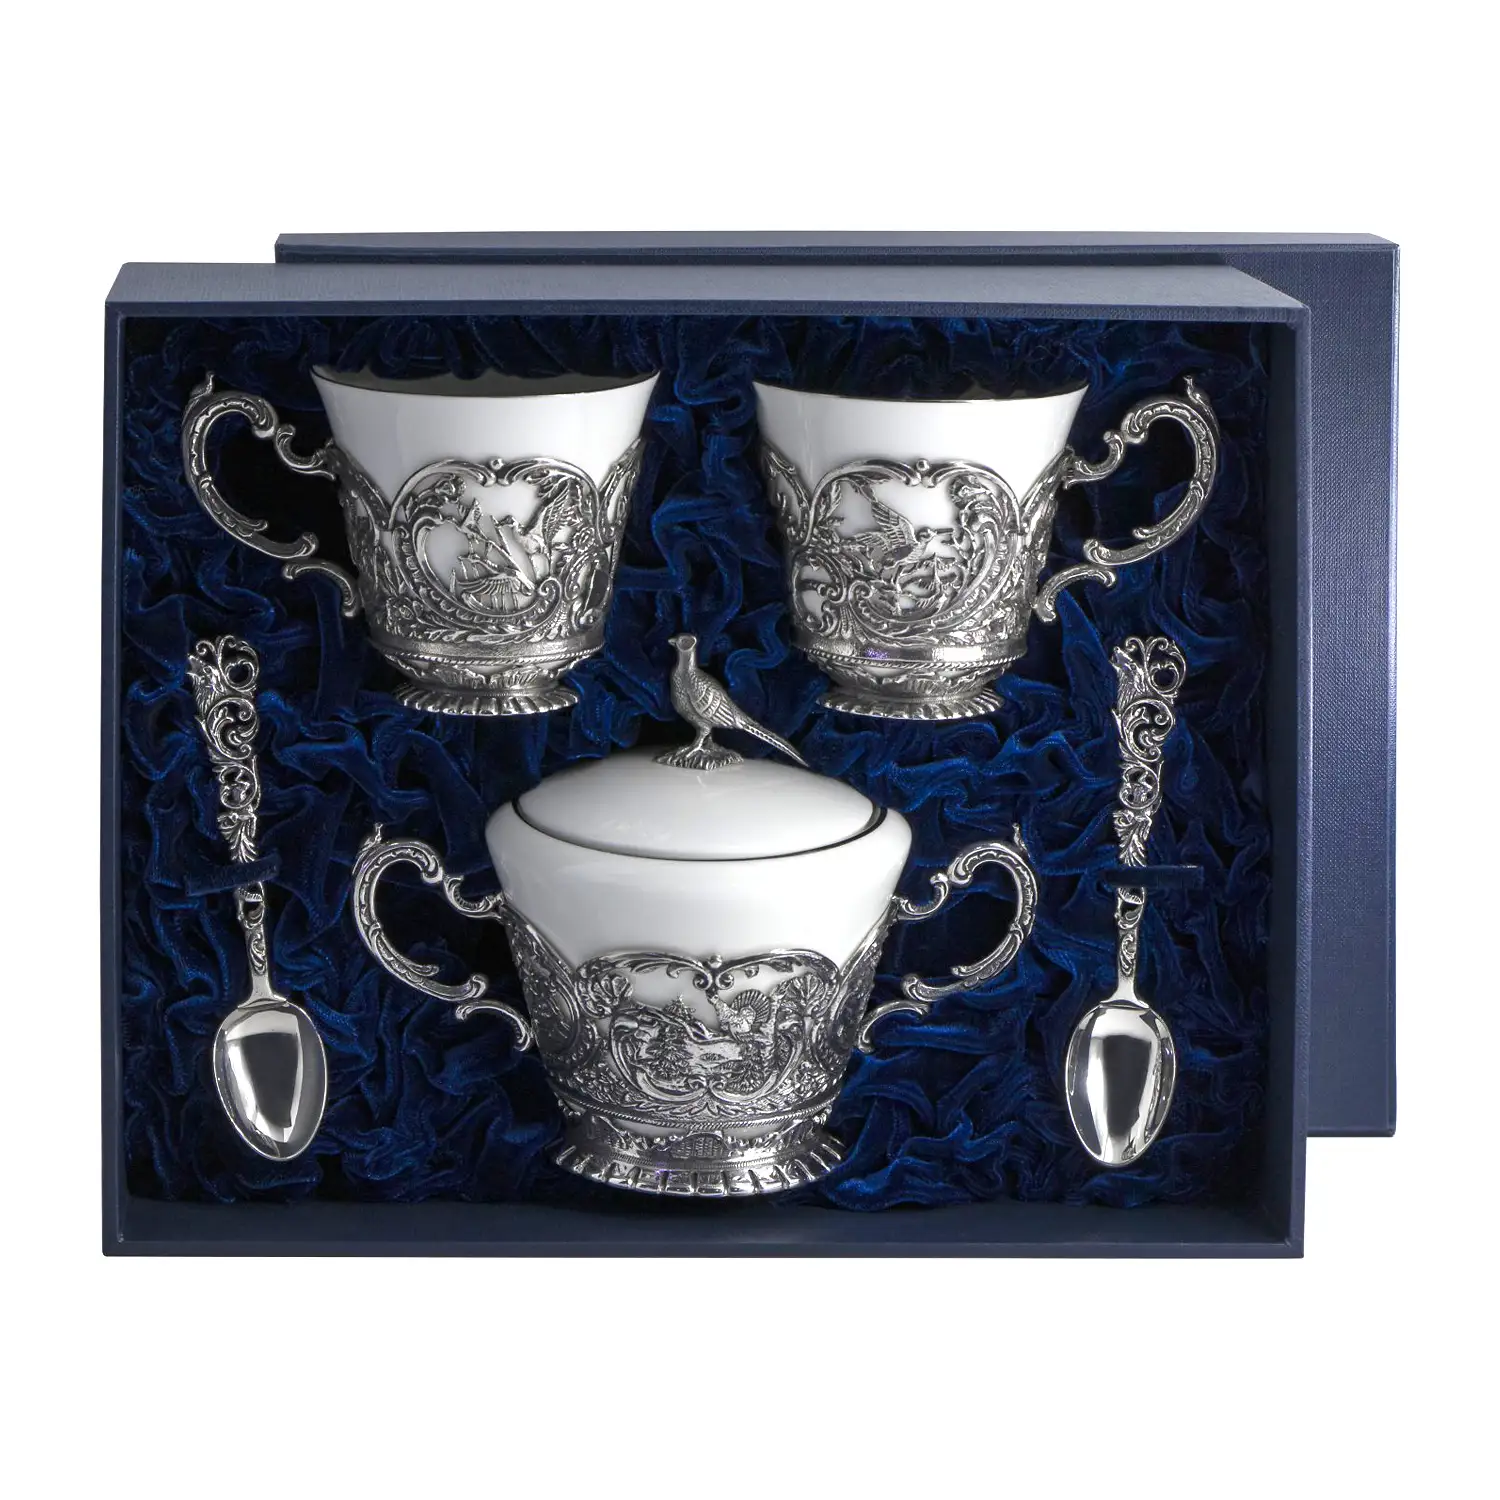 Набор Королевская охота: ложка, чашка, сахарница (Серебро 925) набор королевская охота ложка чашка сахарница серебро 925